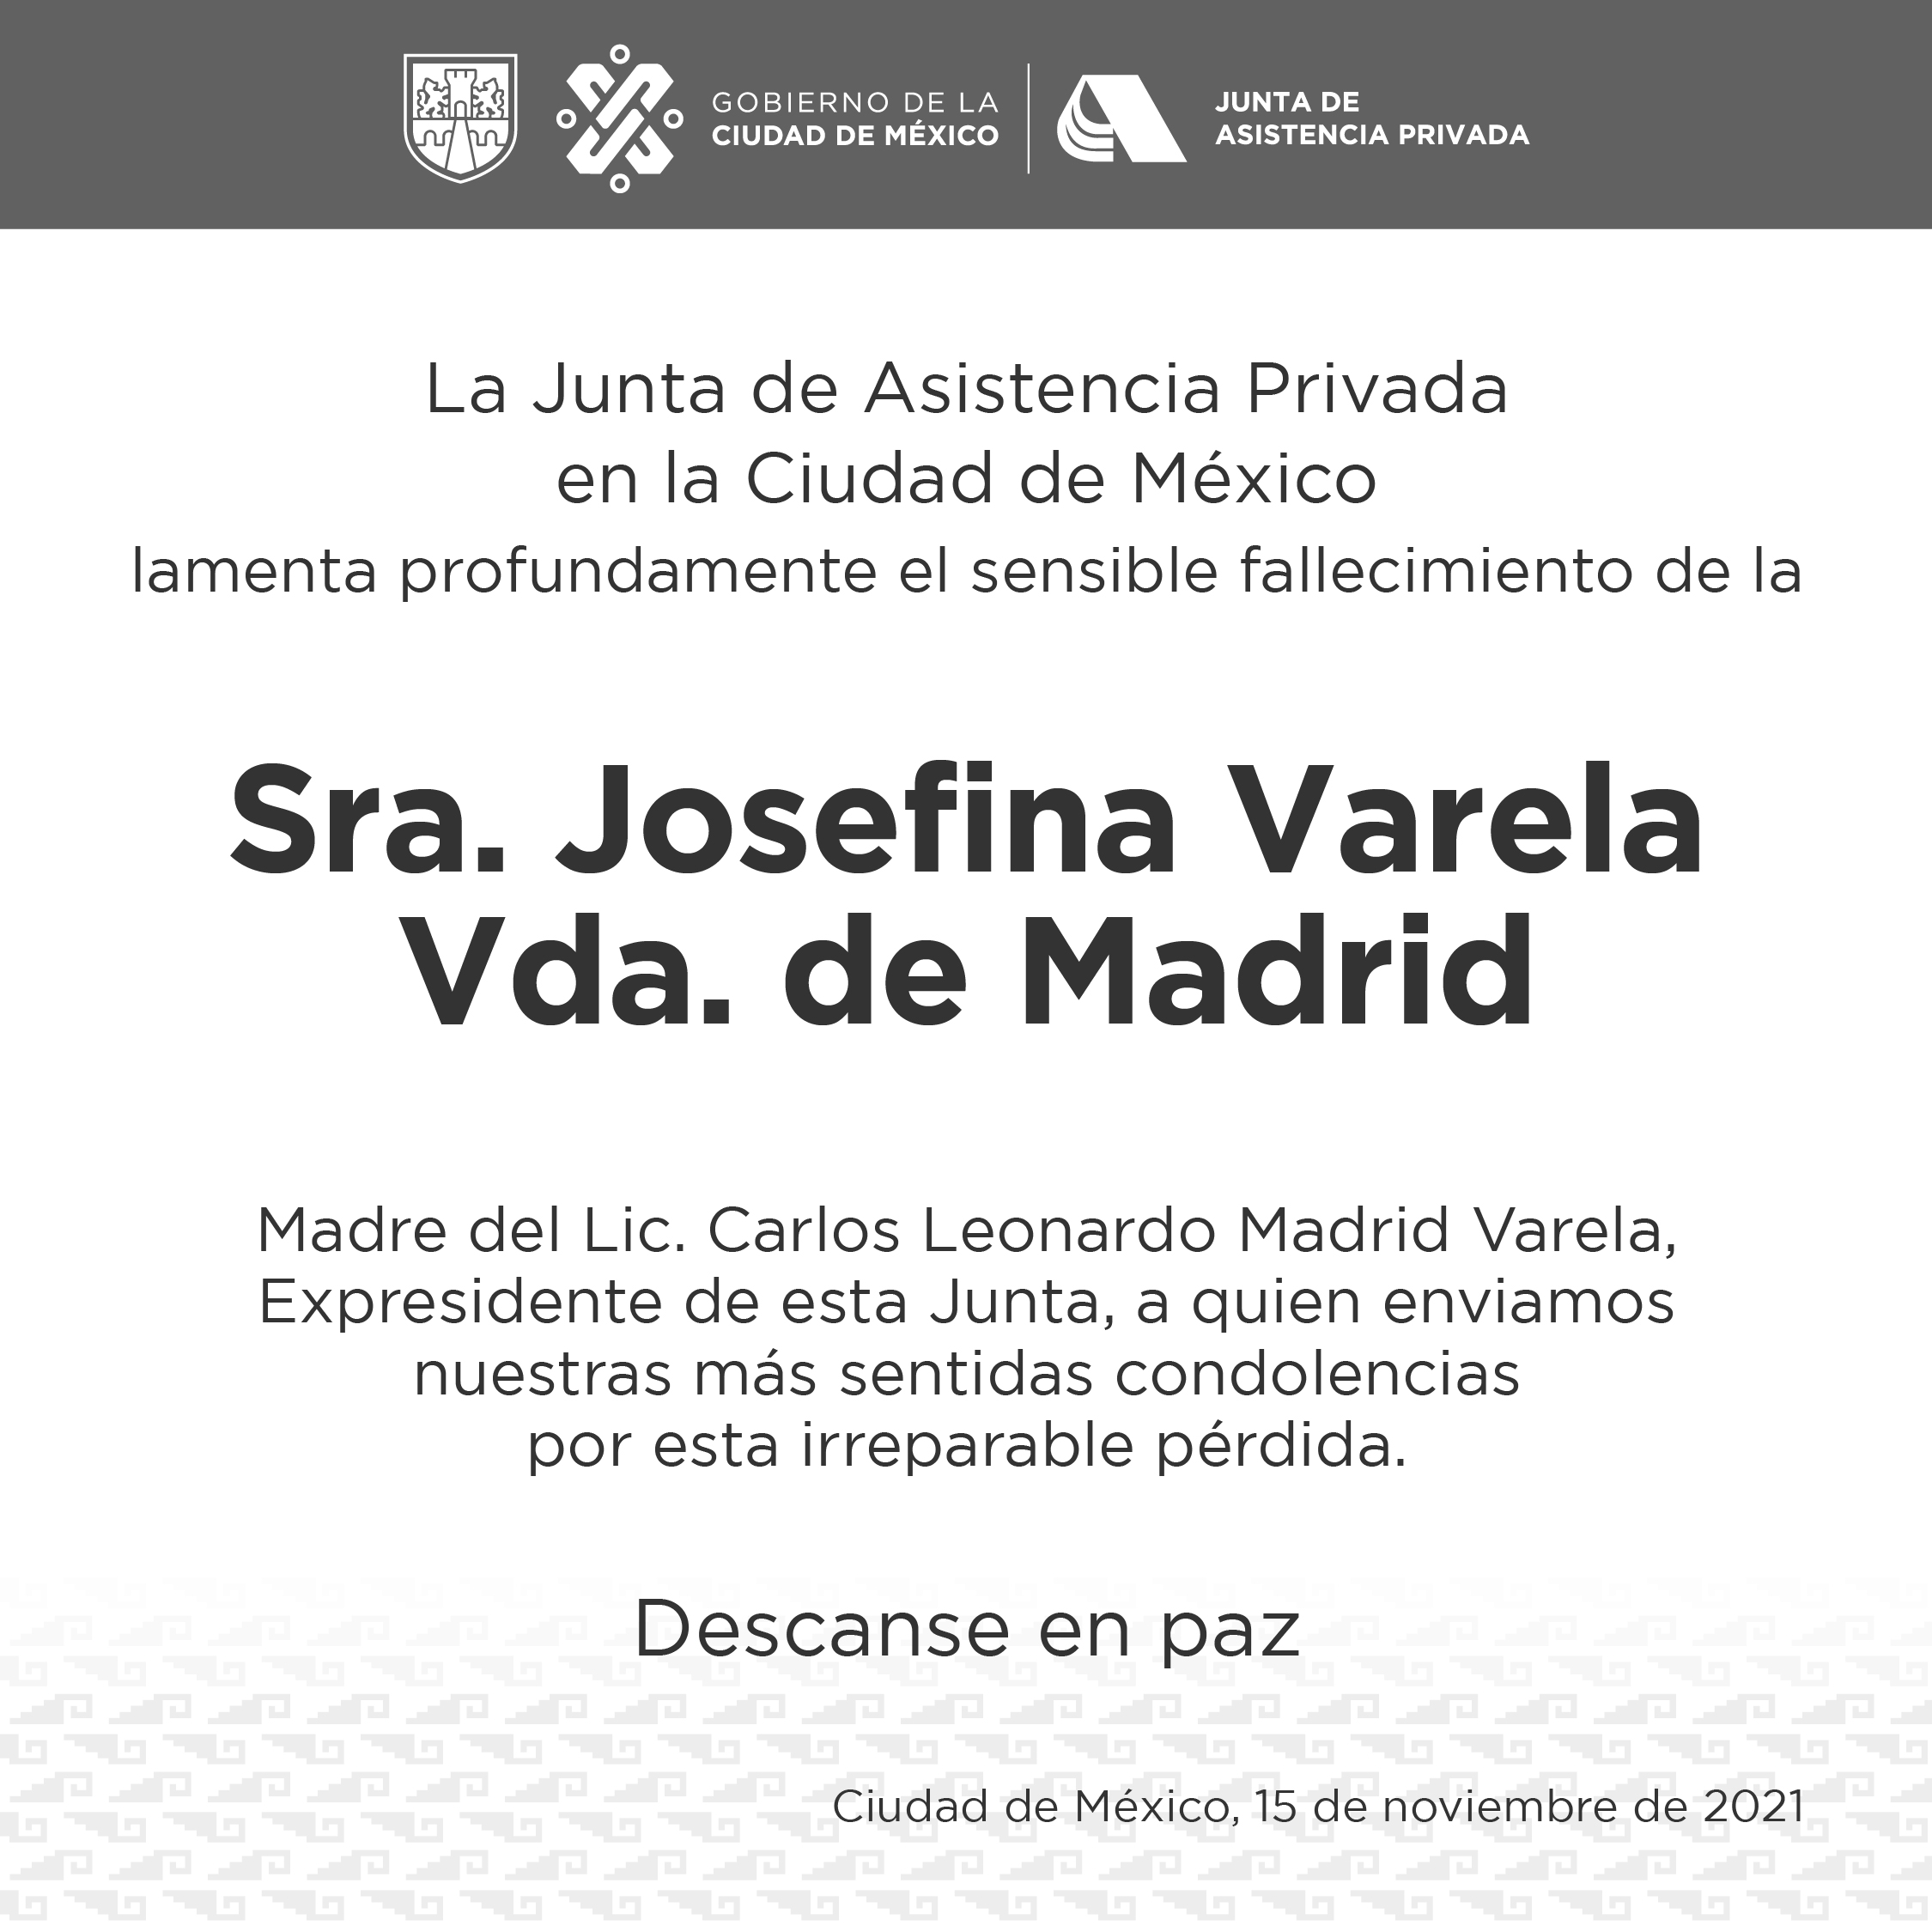 Condolencias para Carlos Madrid Varela, expresidente de la Junta, por la pérdida de su madre